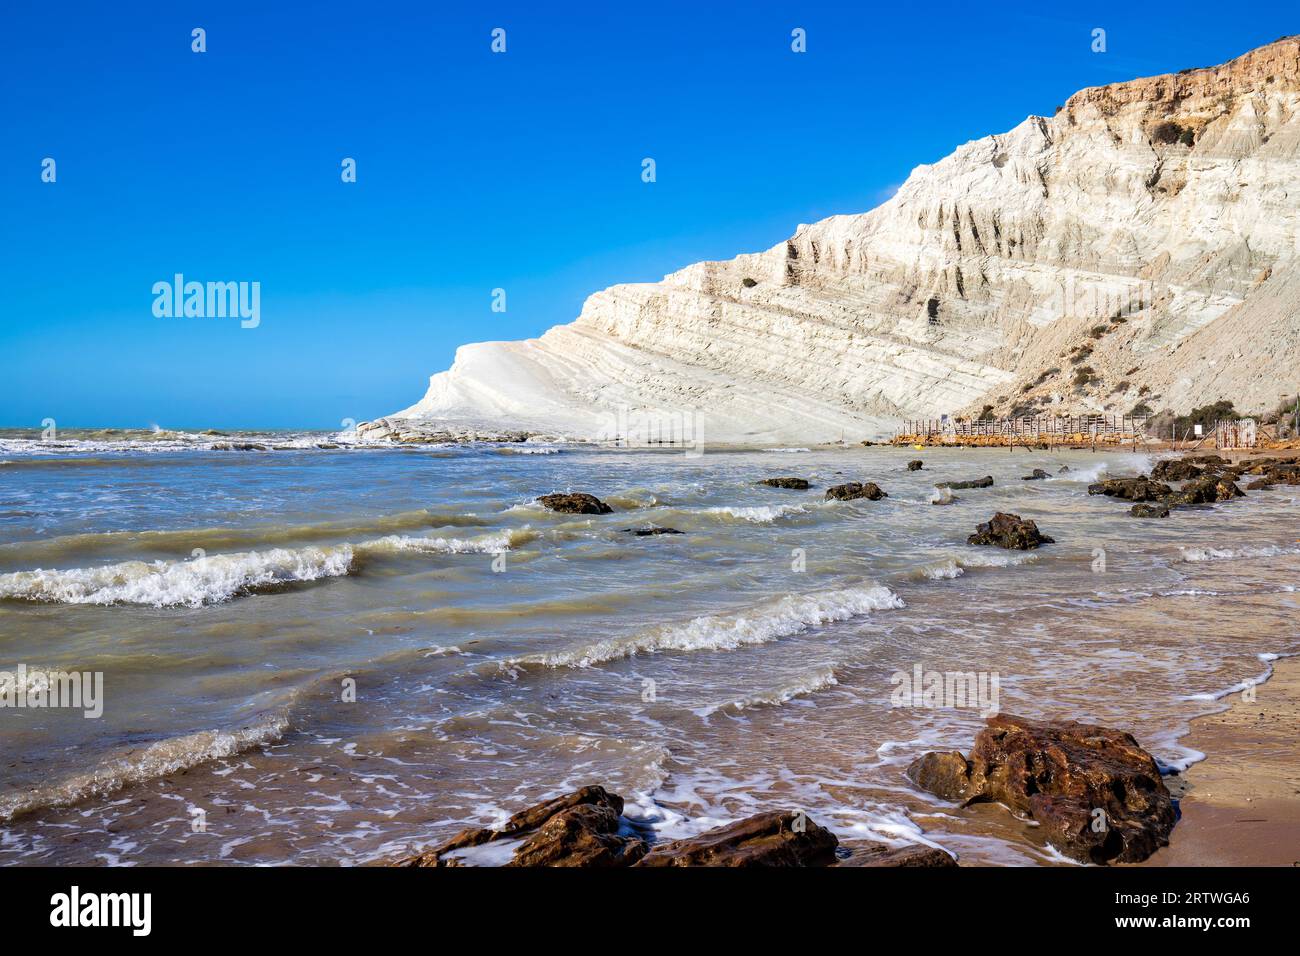 Blick auf die weißen Kalksteinfelsen mit dem Strand an der Türken-Treppe oder der Türkischen Treppe in der Nähe von Realmonte in der Provinz Agrigento. Sizilien, Italien Stockfoto